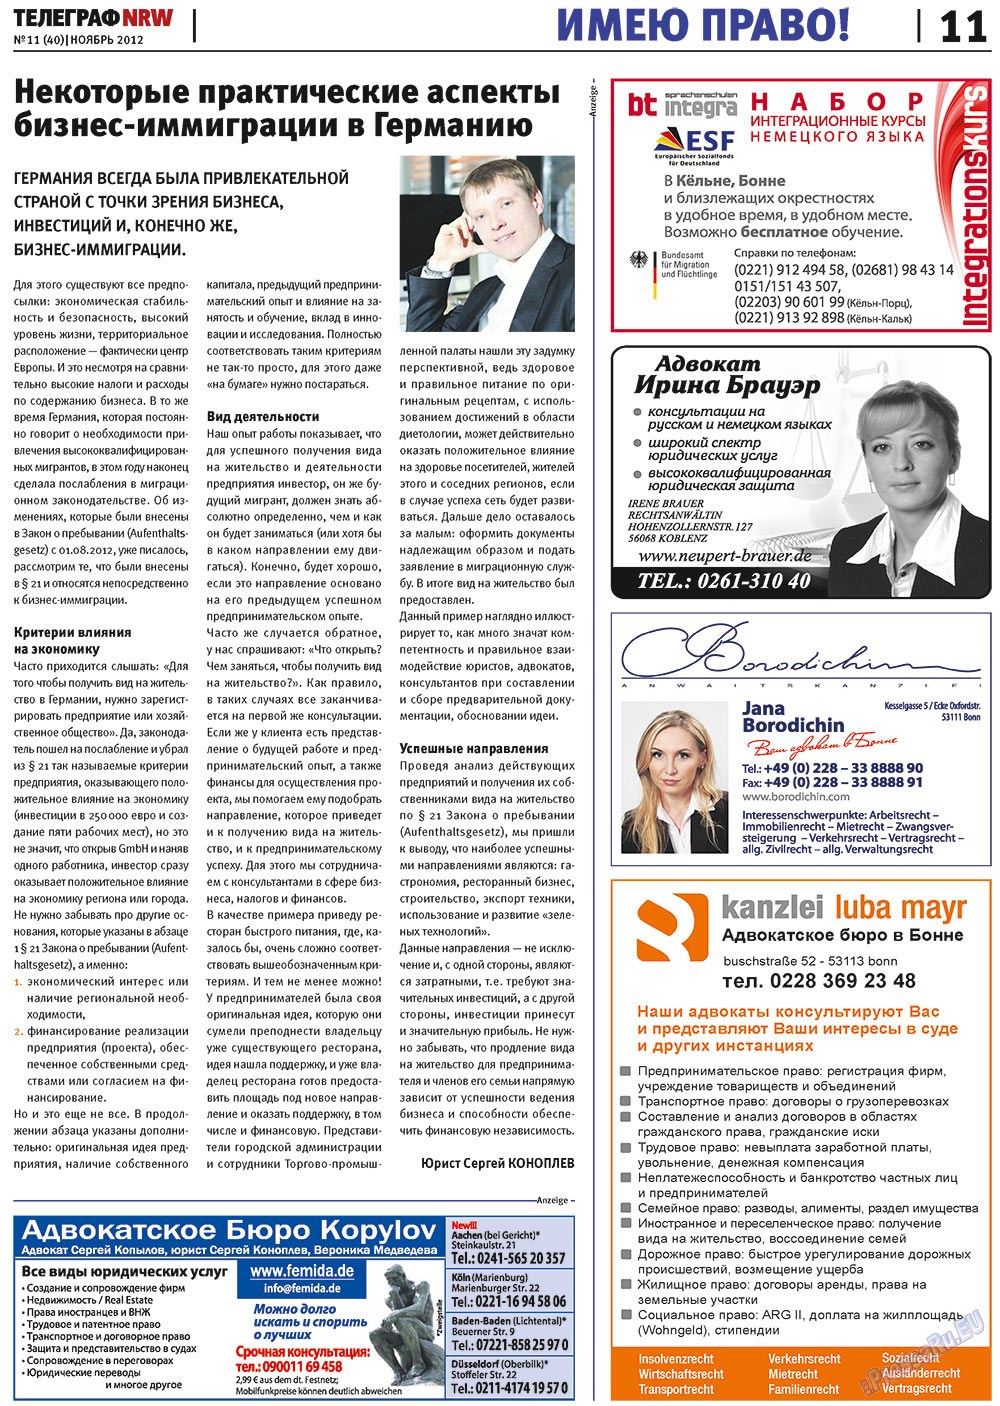 Телеграф NRW (газета). 2012 год, номер 11, стр. 11